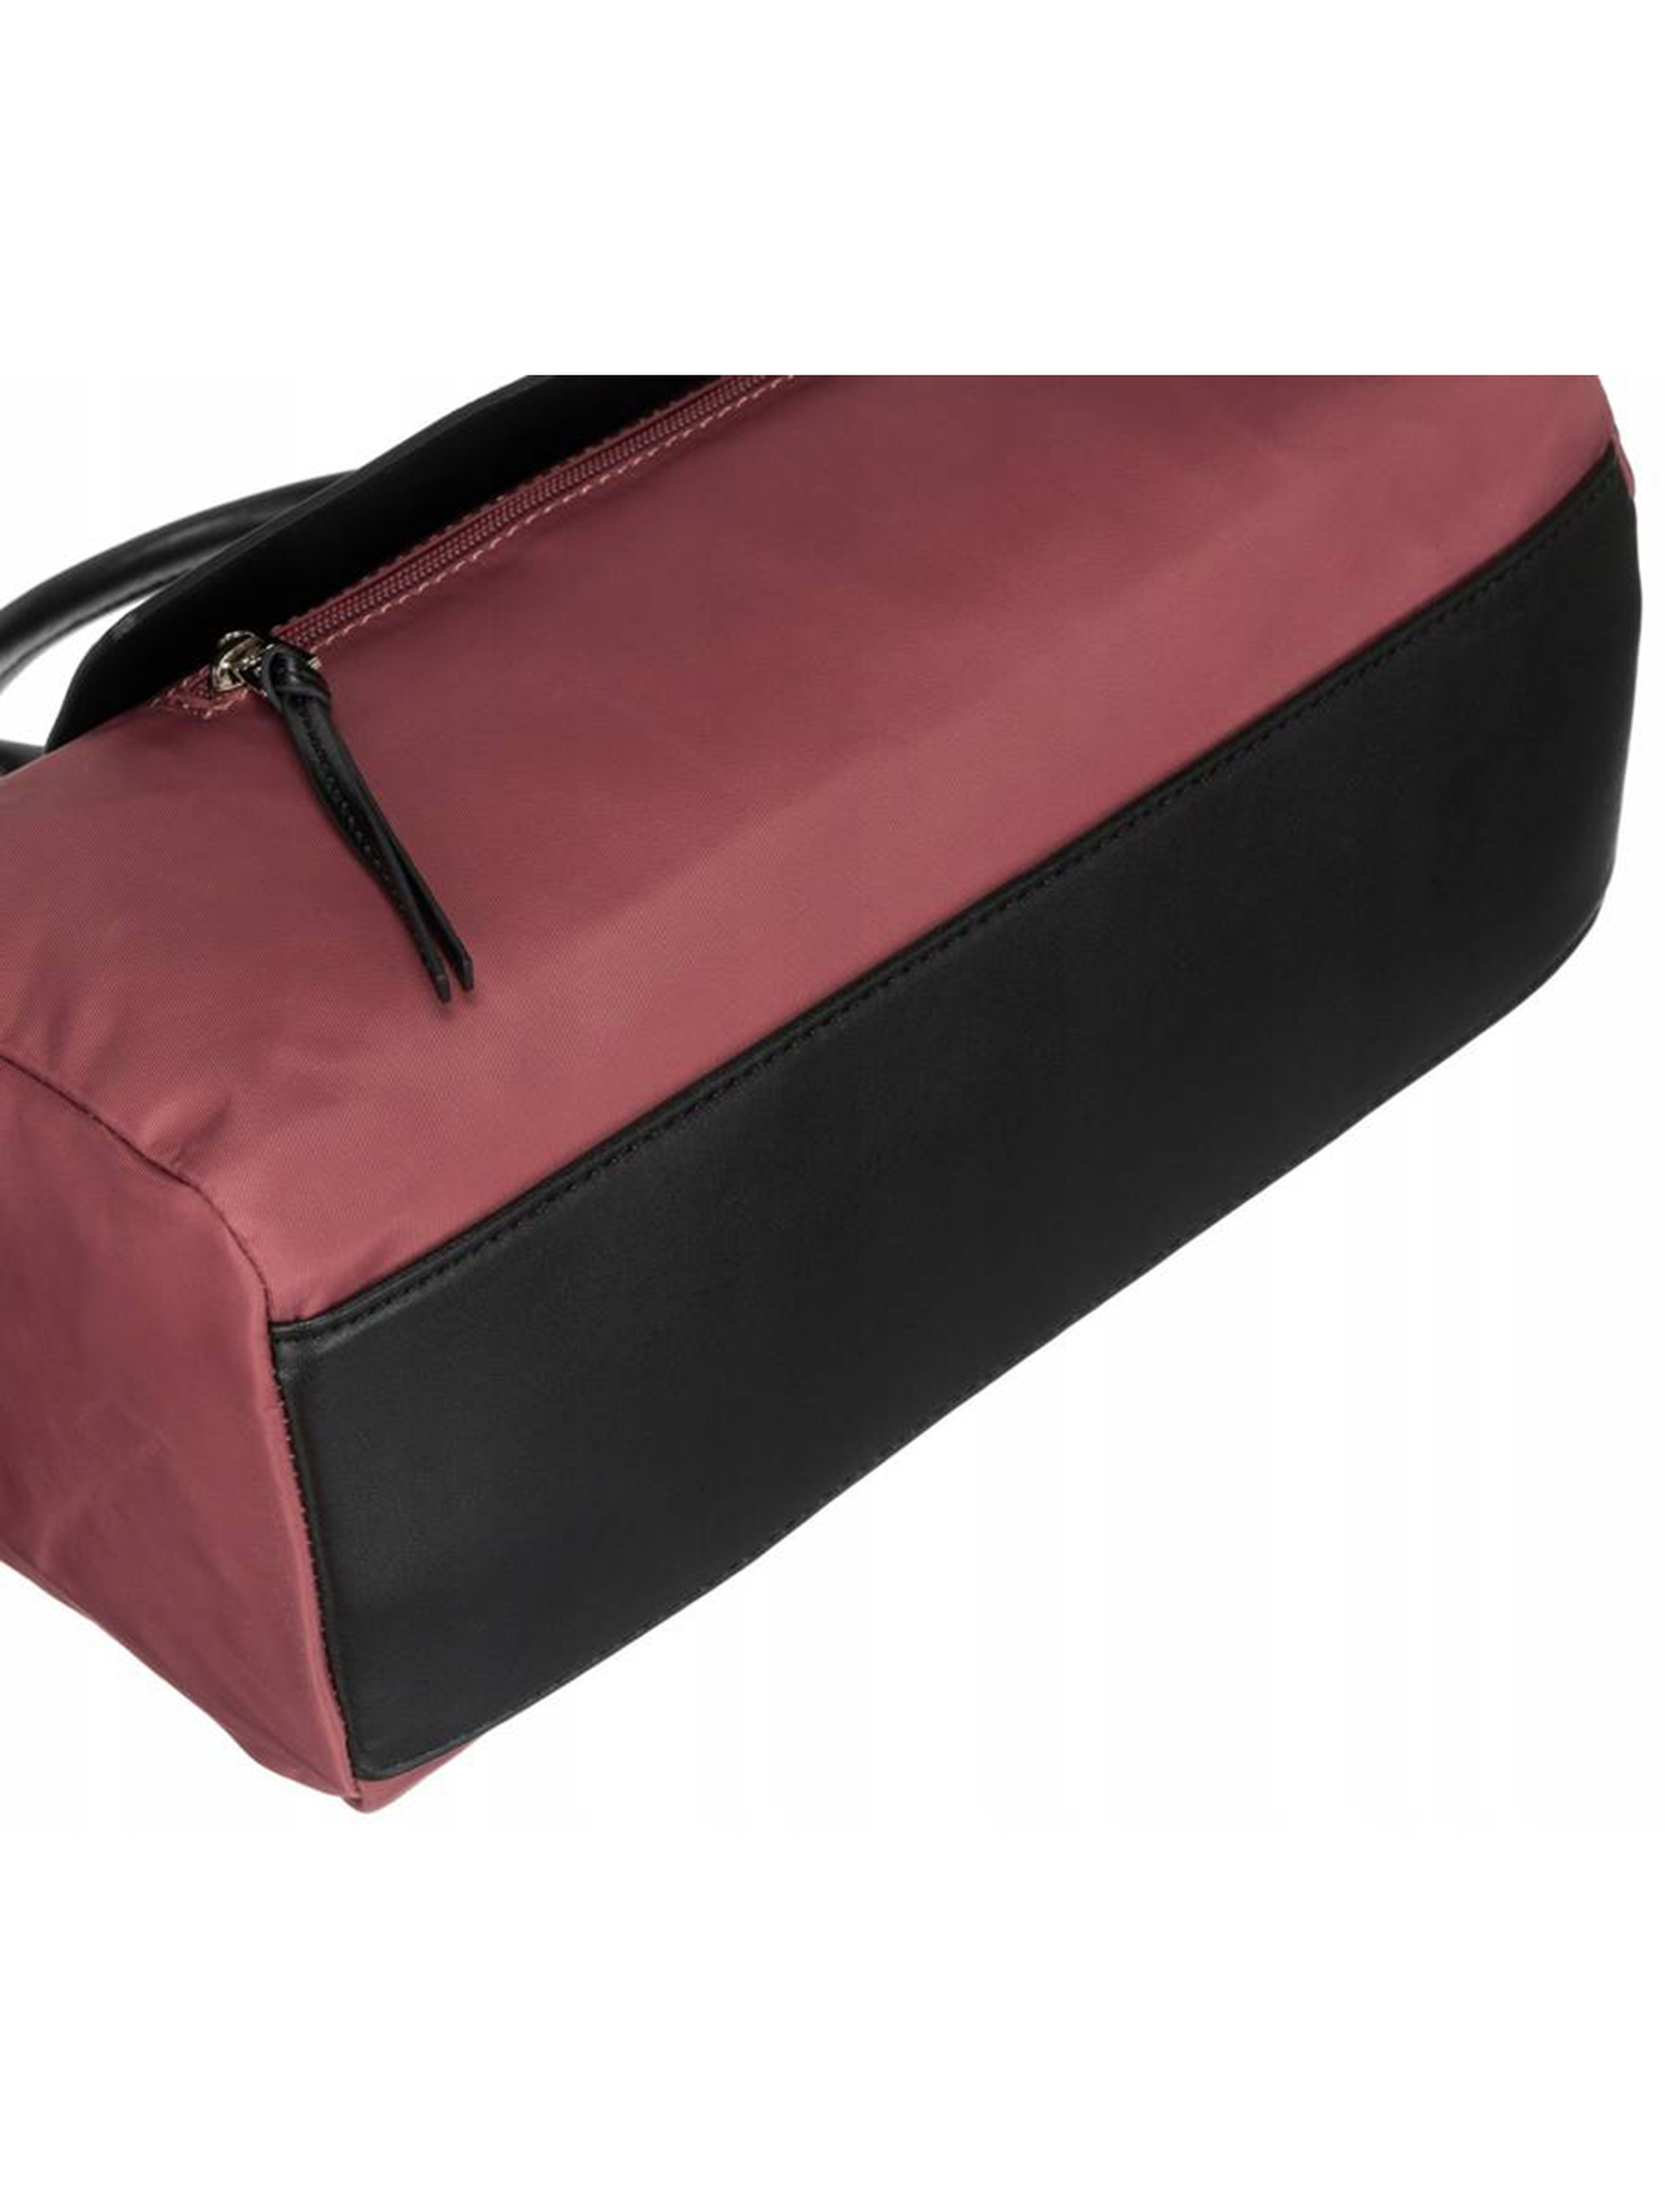 Poręczna, miejska torebka w kształcie bagietki — David Jones różowa